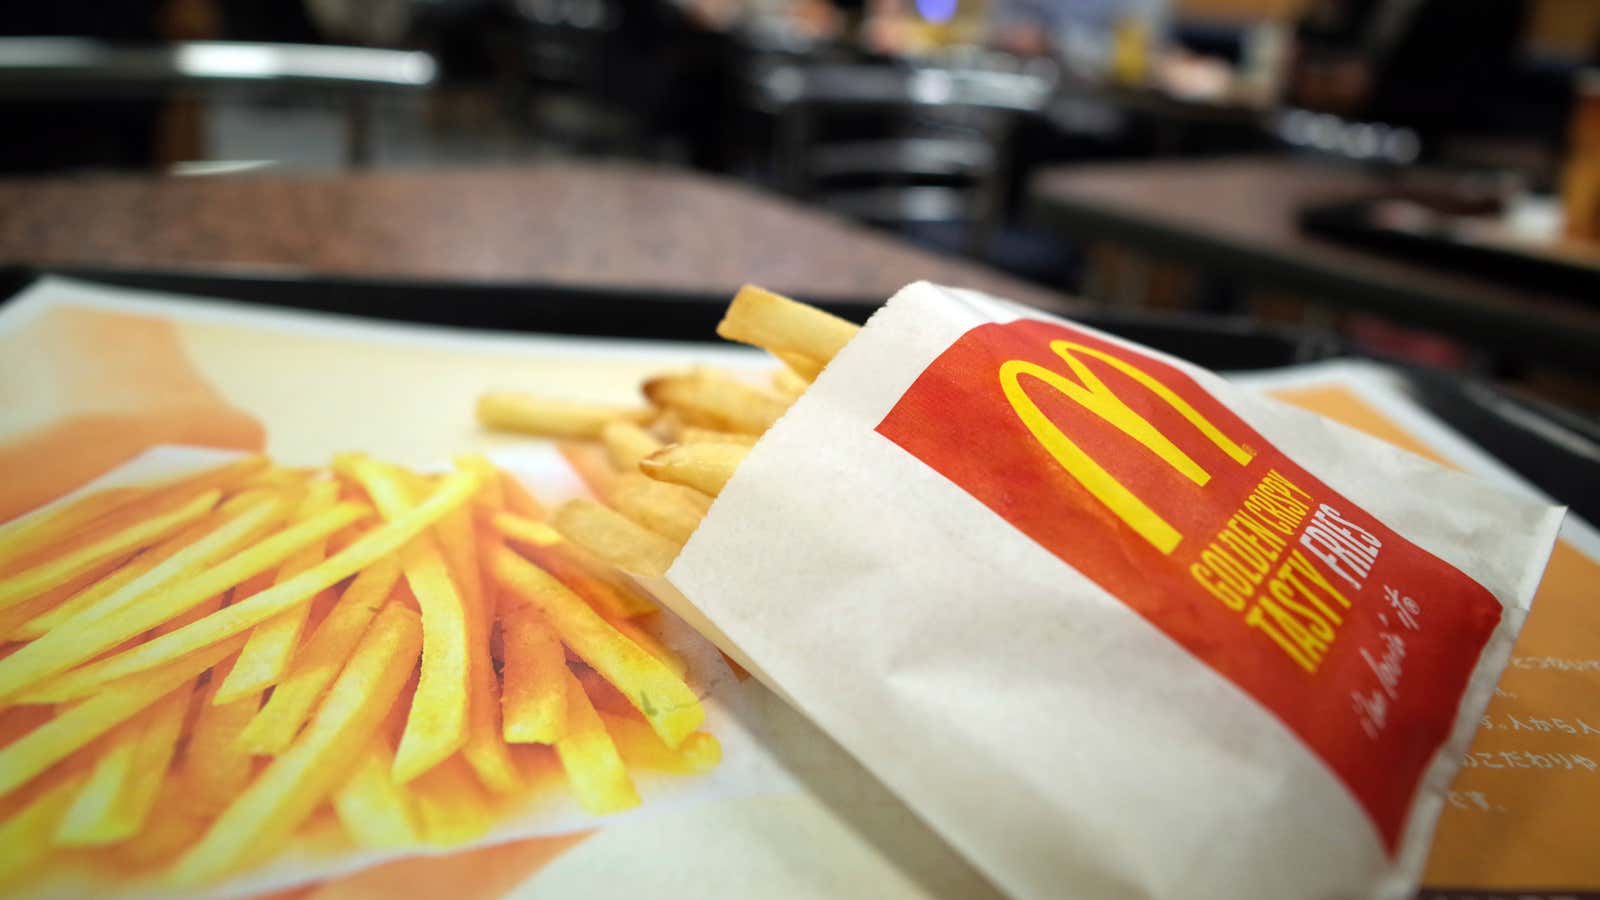 Same fries, new flack.